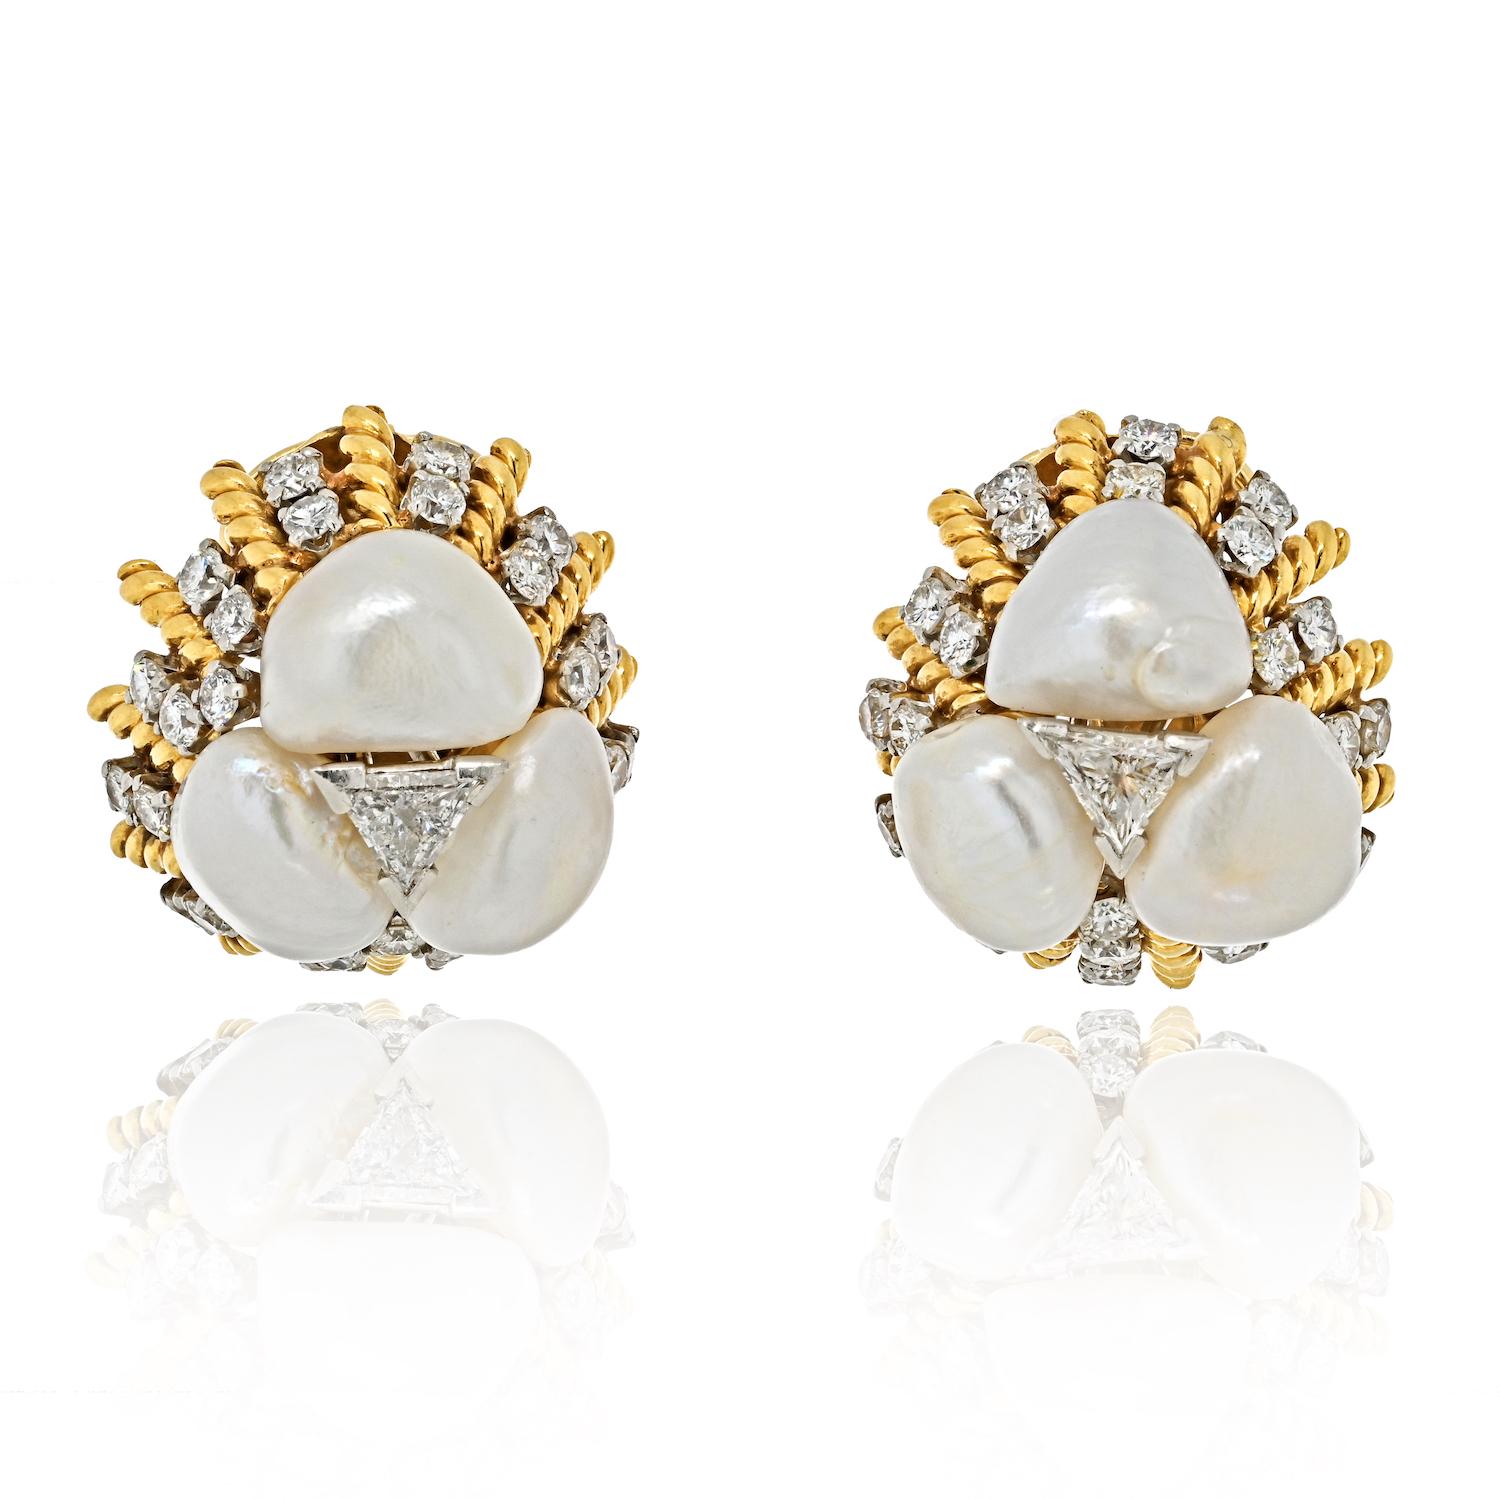 Les boucles d'oreilles à pince David Webb en platine et or jaune 18 carats, ornées de diamants et de perles, sont un superbe exemple du luxe et de l'élégance qui font la renommée de la marque David Webb. Ces boucles d'oreilles sont une véritable